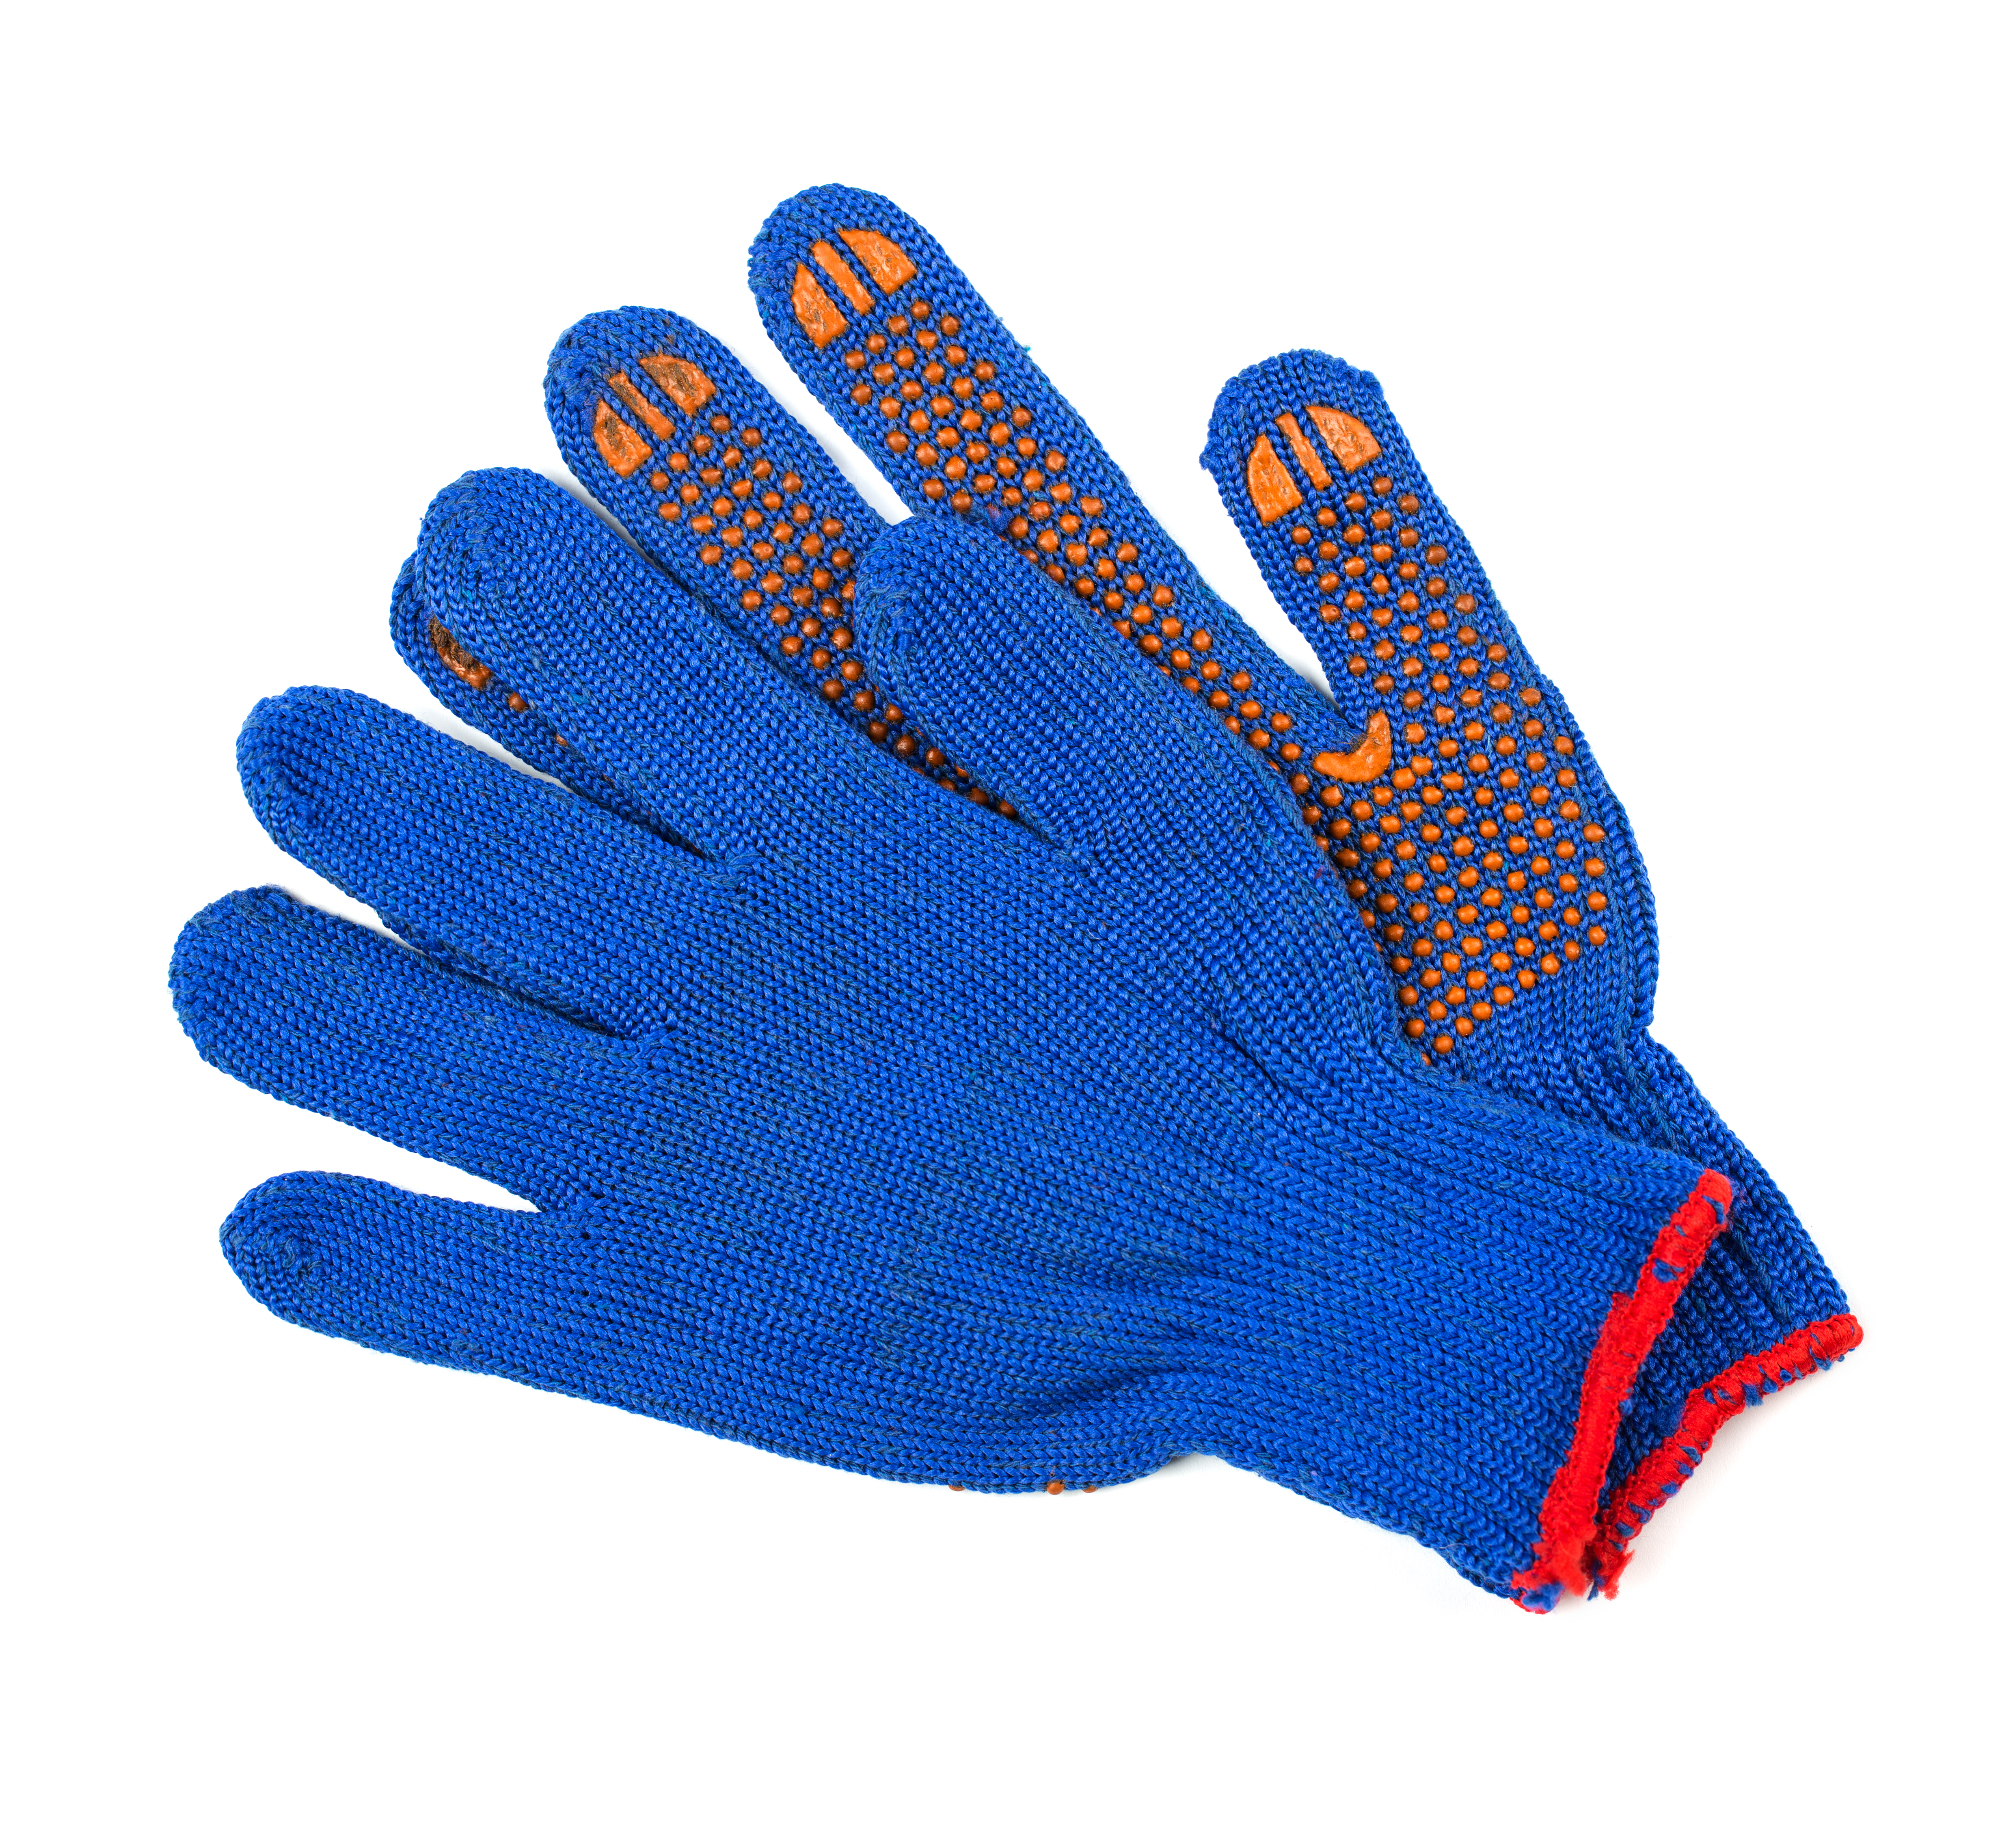 Zaščitne rokavice so zelo pomemben del zaščitne opreme